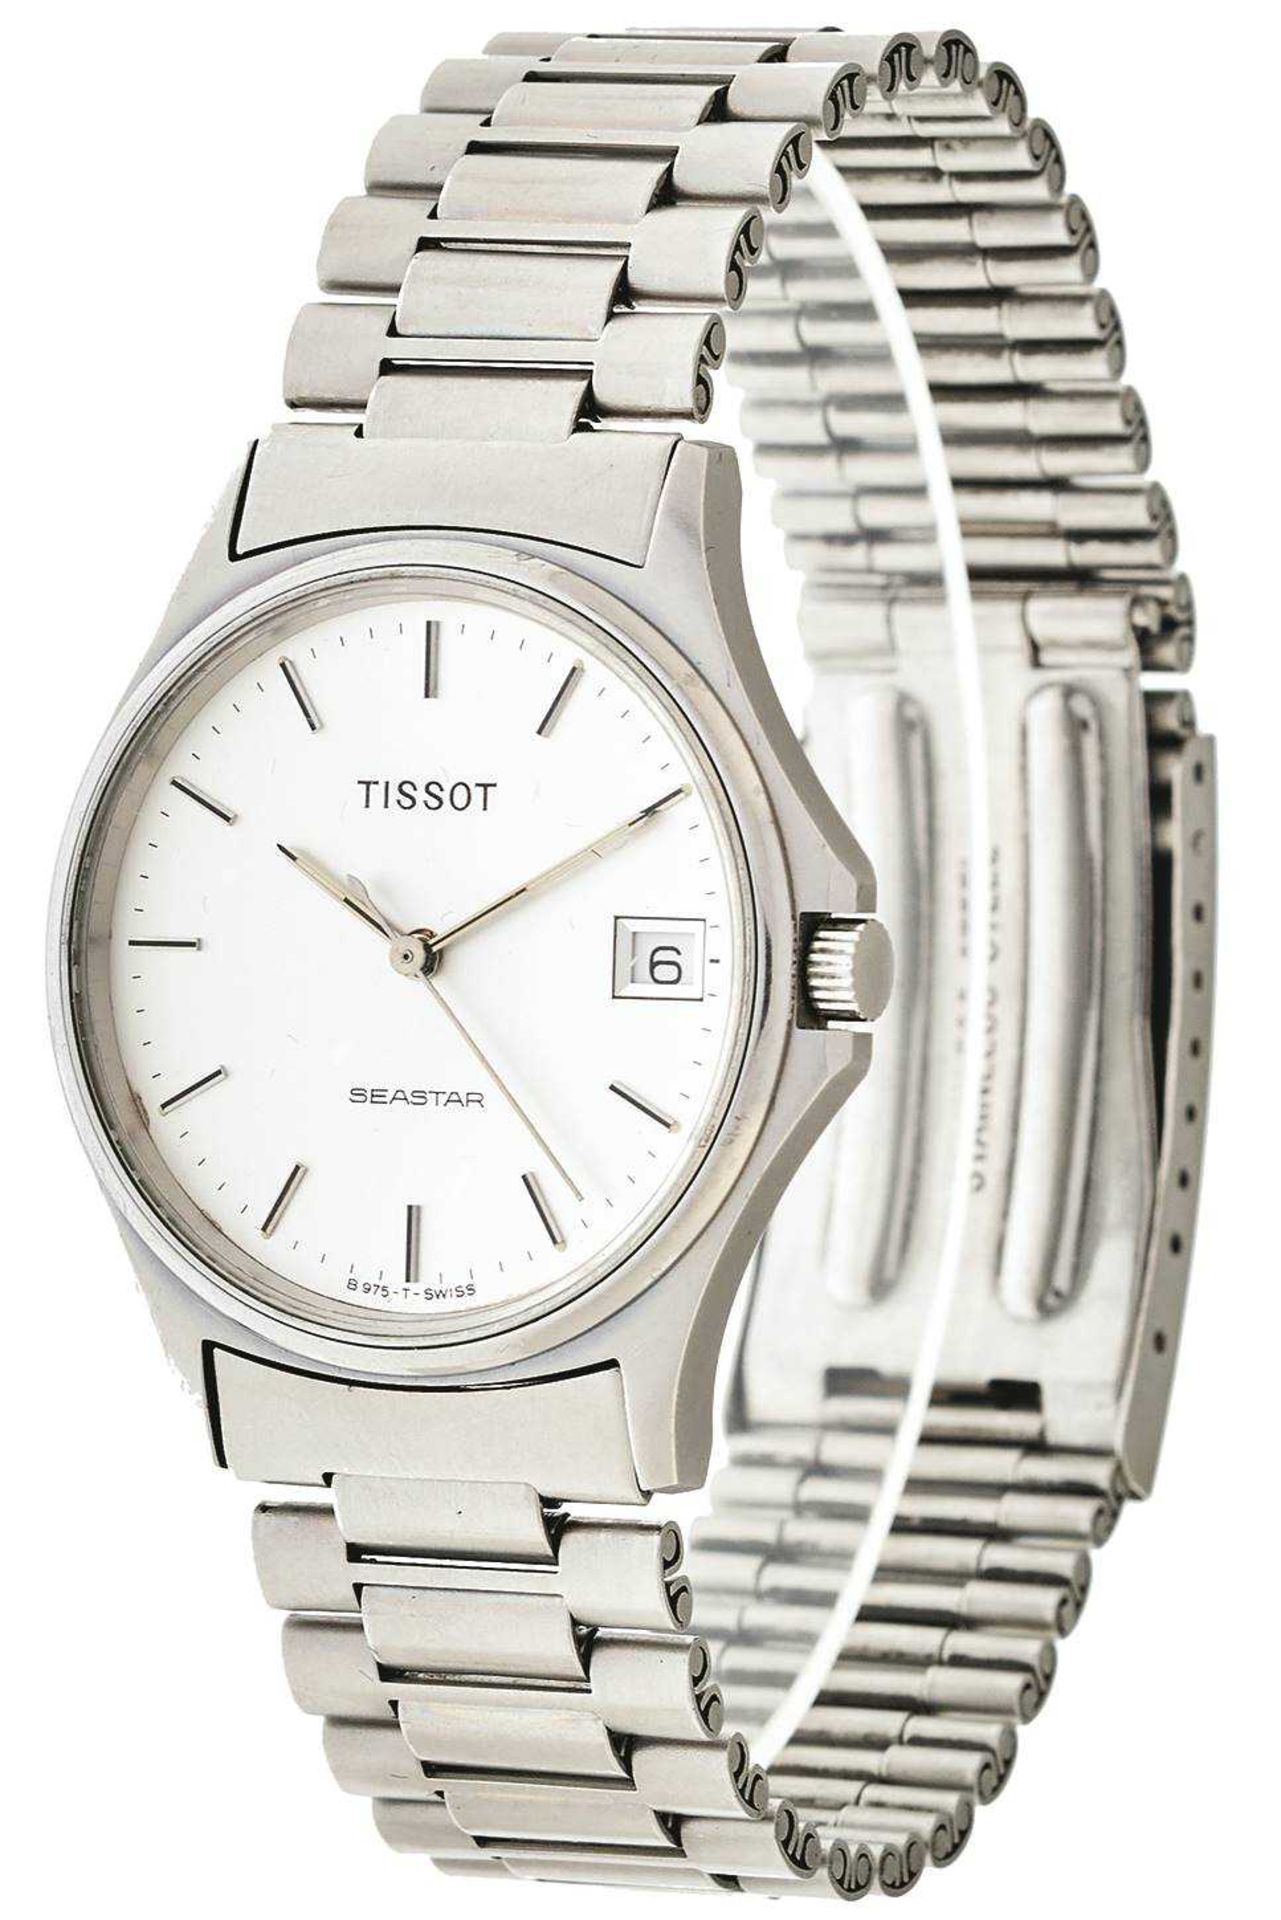 Tissot Seastar Herren Armbanduhr. Ca. 33mm, Edelstahl, Quarz. Silberfarbenes Ziffernblatt mit fluore